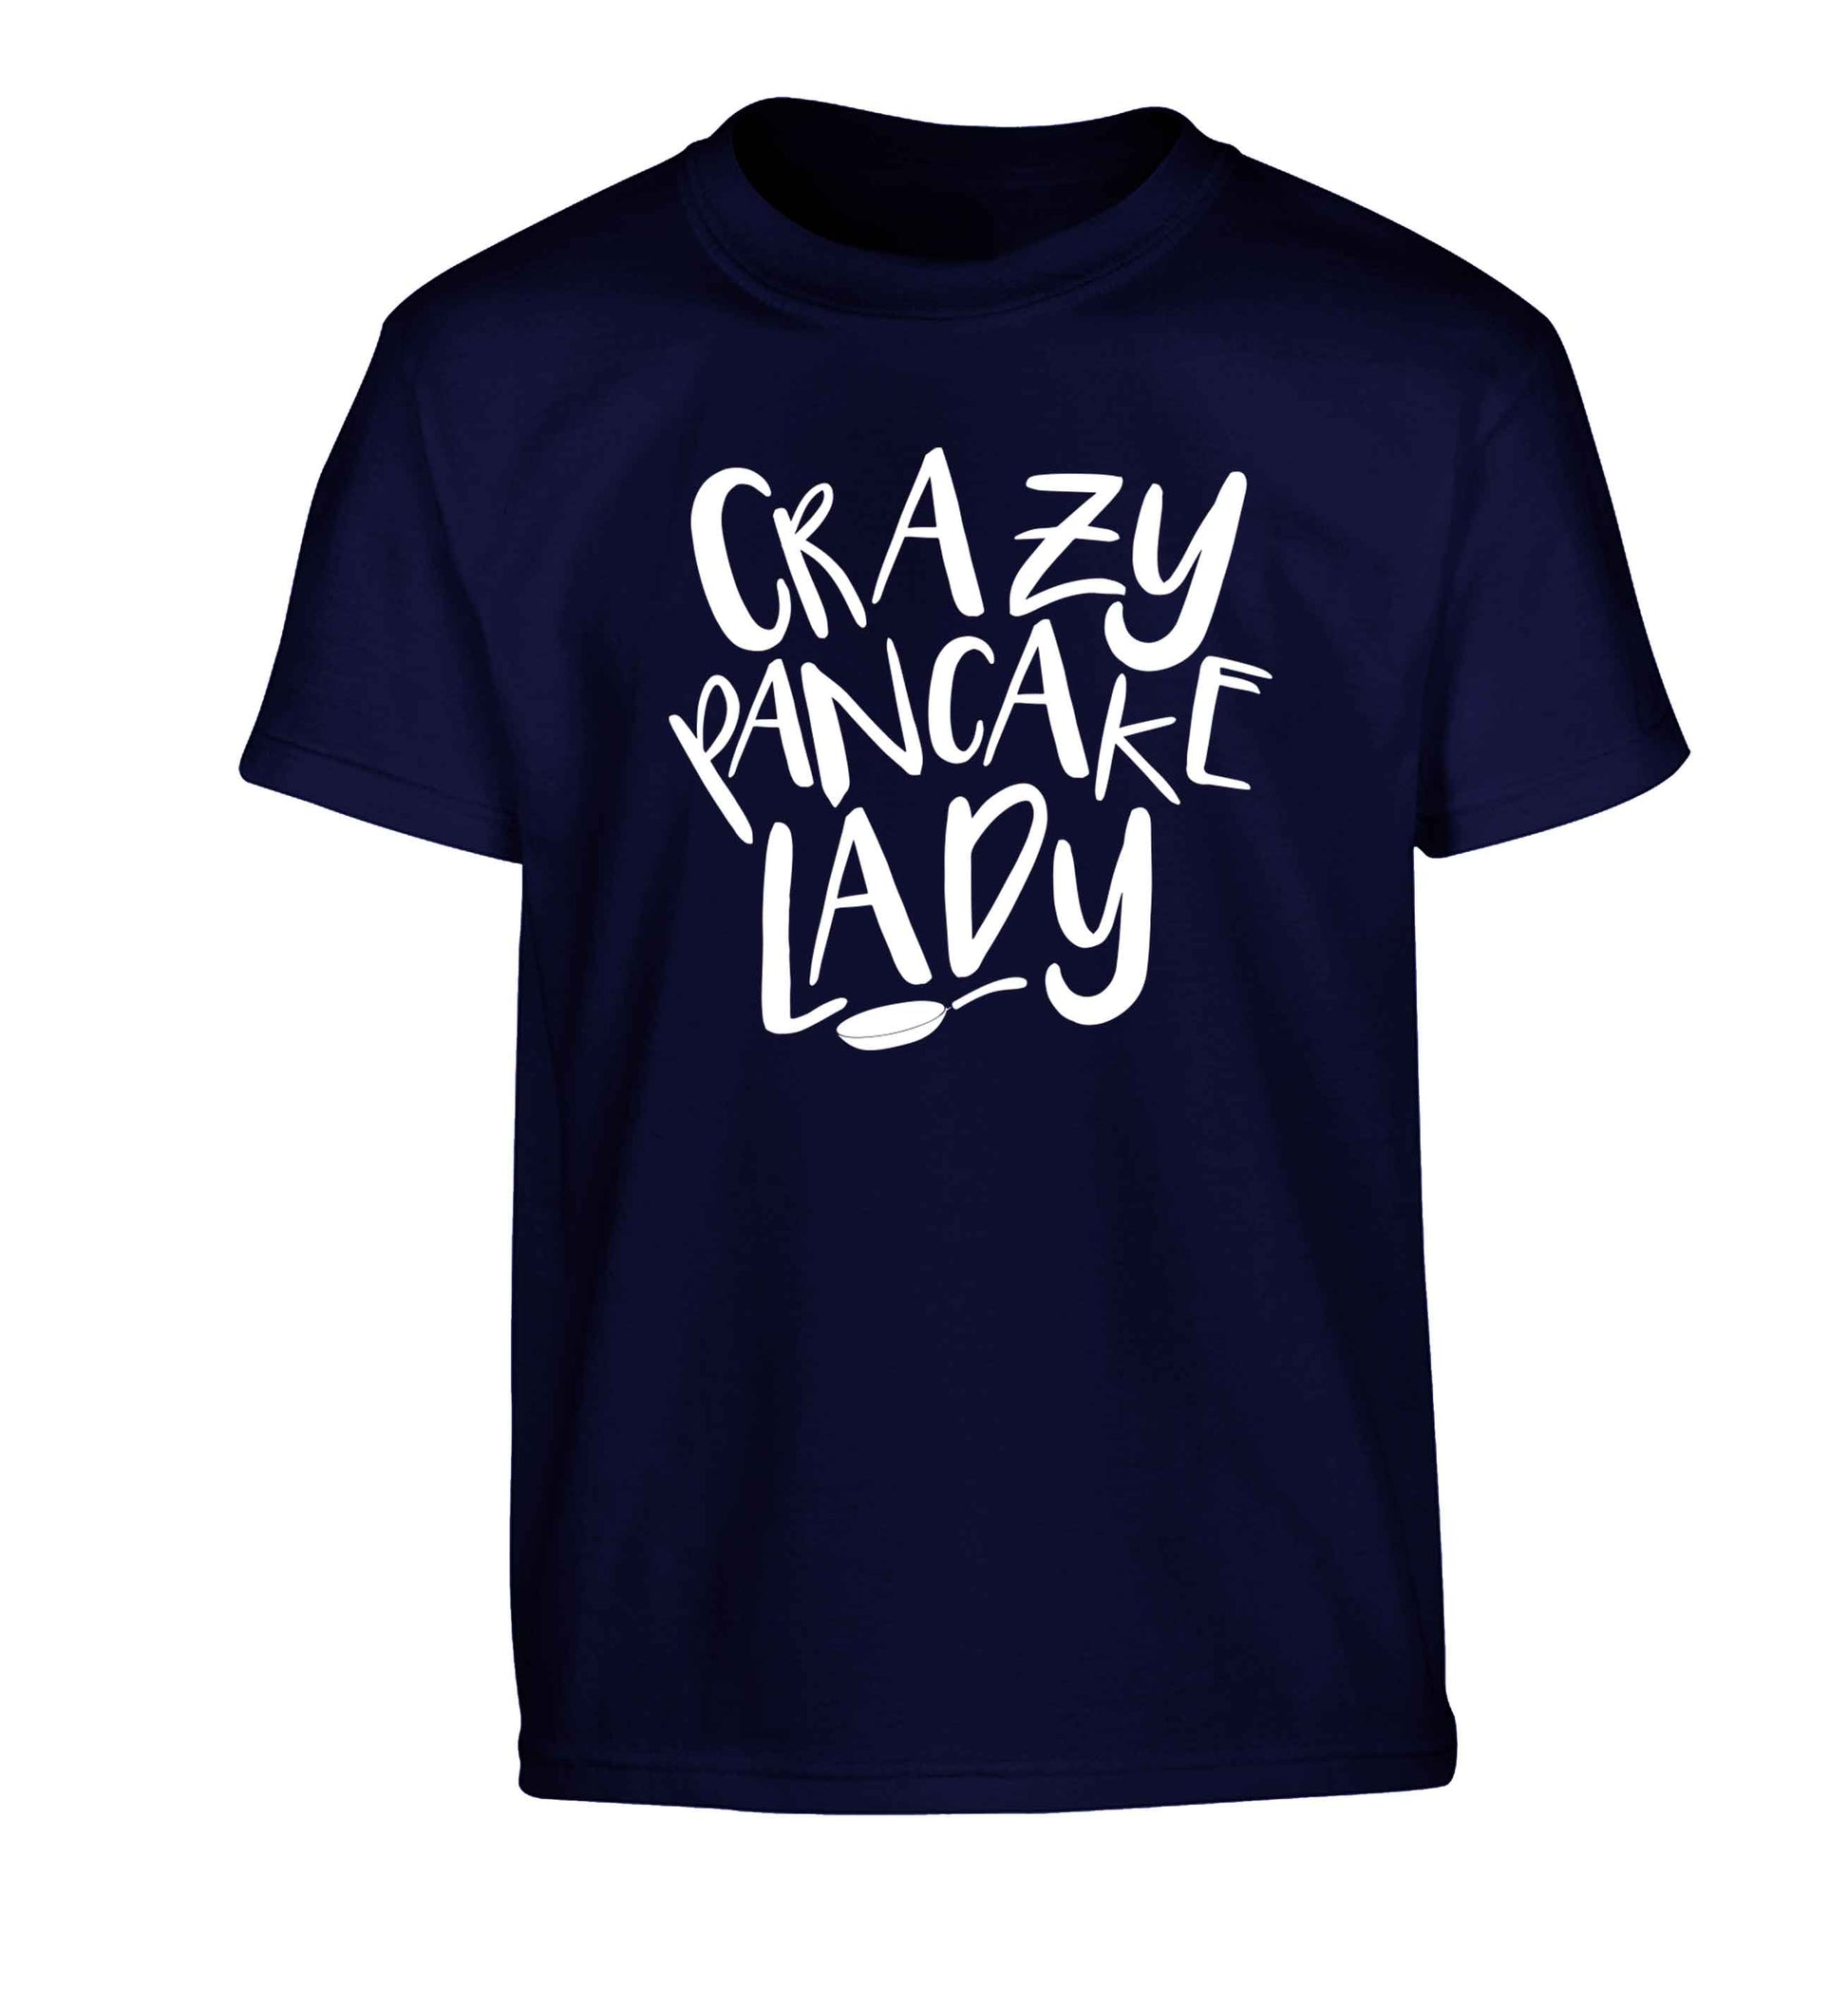 Crazy pancake lady Children's navy Tshirt 12-13 Years